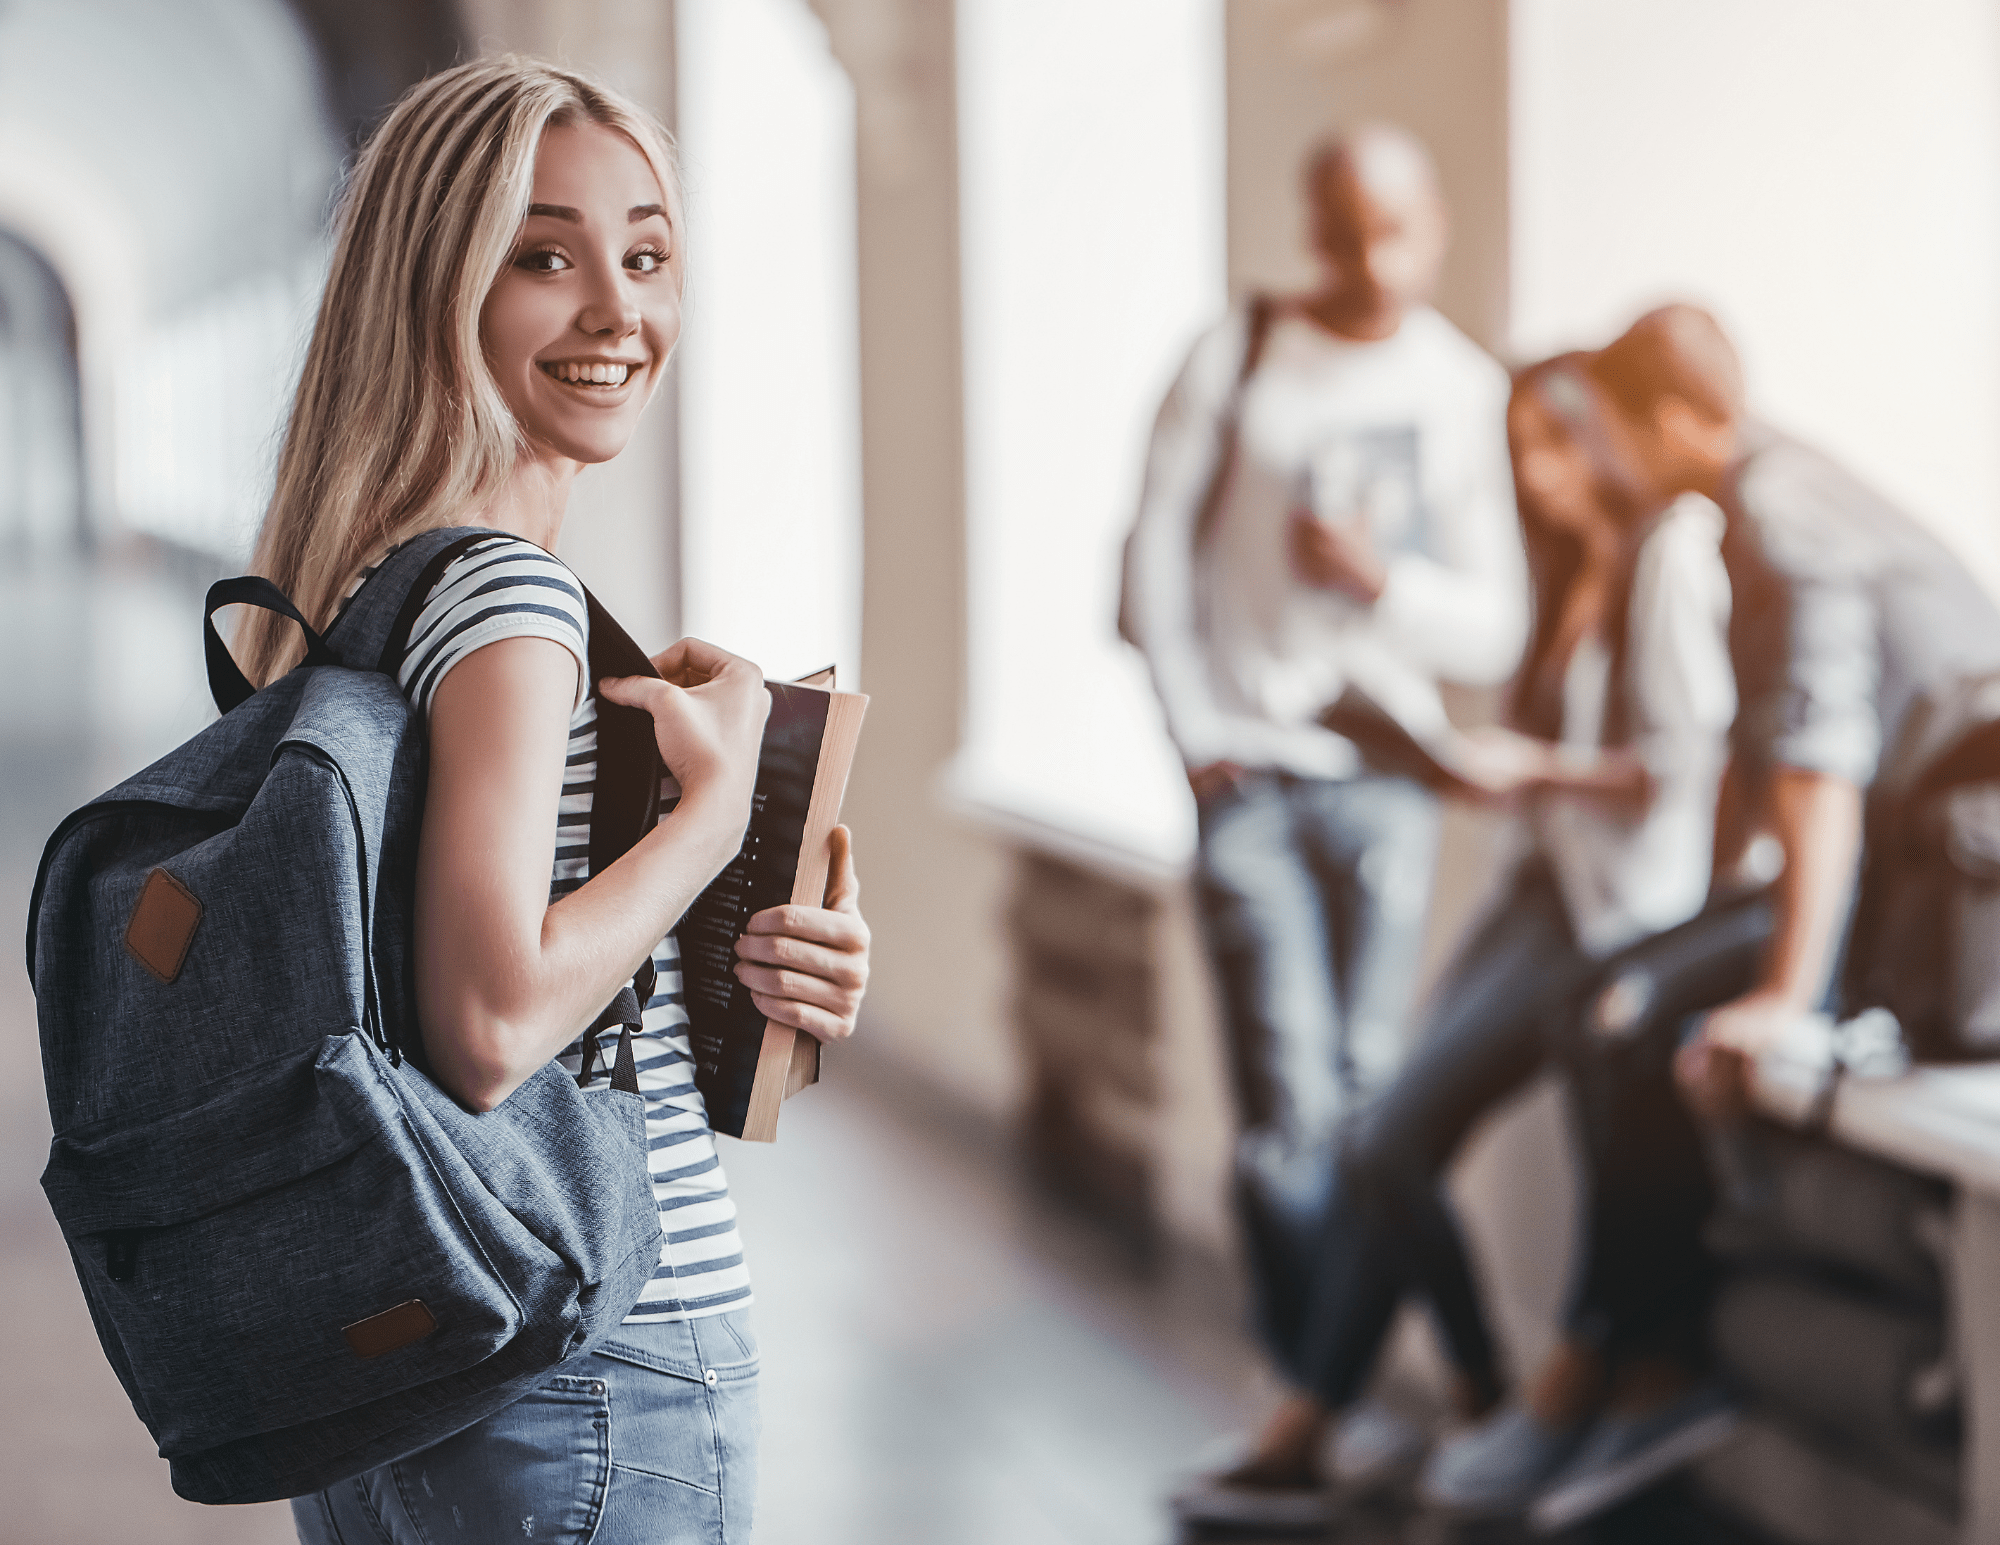 Une jeune femme blonde souriante tient son sac à dos et des manuels scolaires, debout dans un couloir d’école. En arrière-plan, trois élèves sont assis.